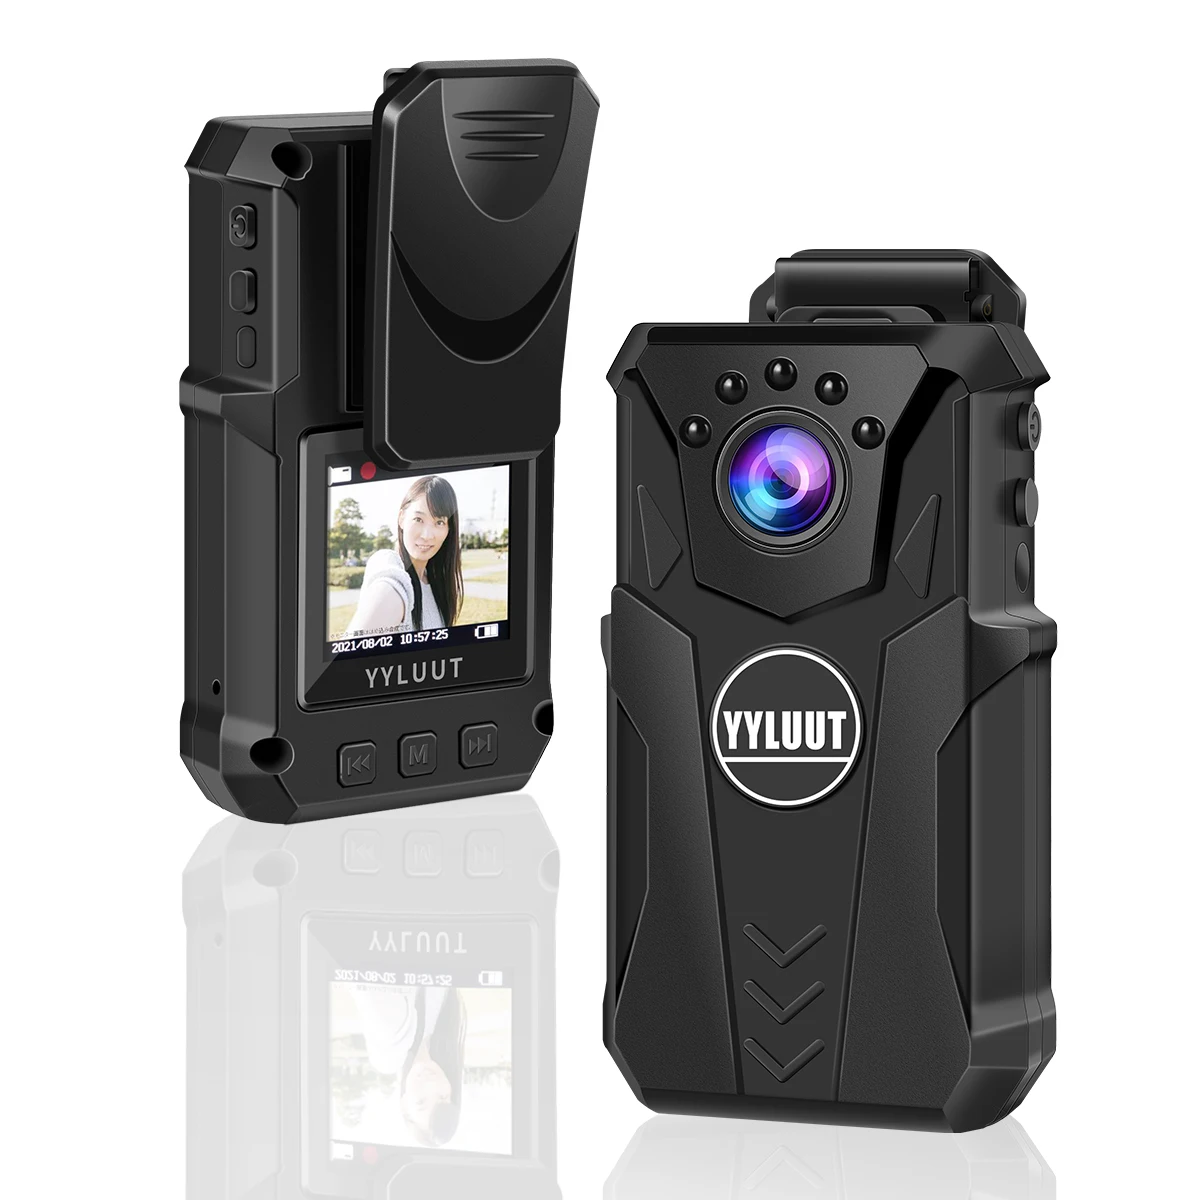 YYLUUT mini body camera,Full HD 1080P telecamera portatile per collare  della polizia per visione notturna, registrazione del suono, scatta foto,  videoregistratori - AliExpress